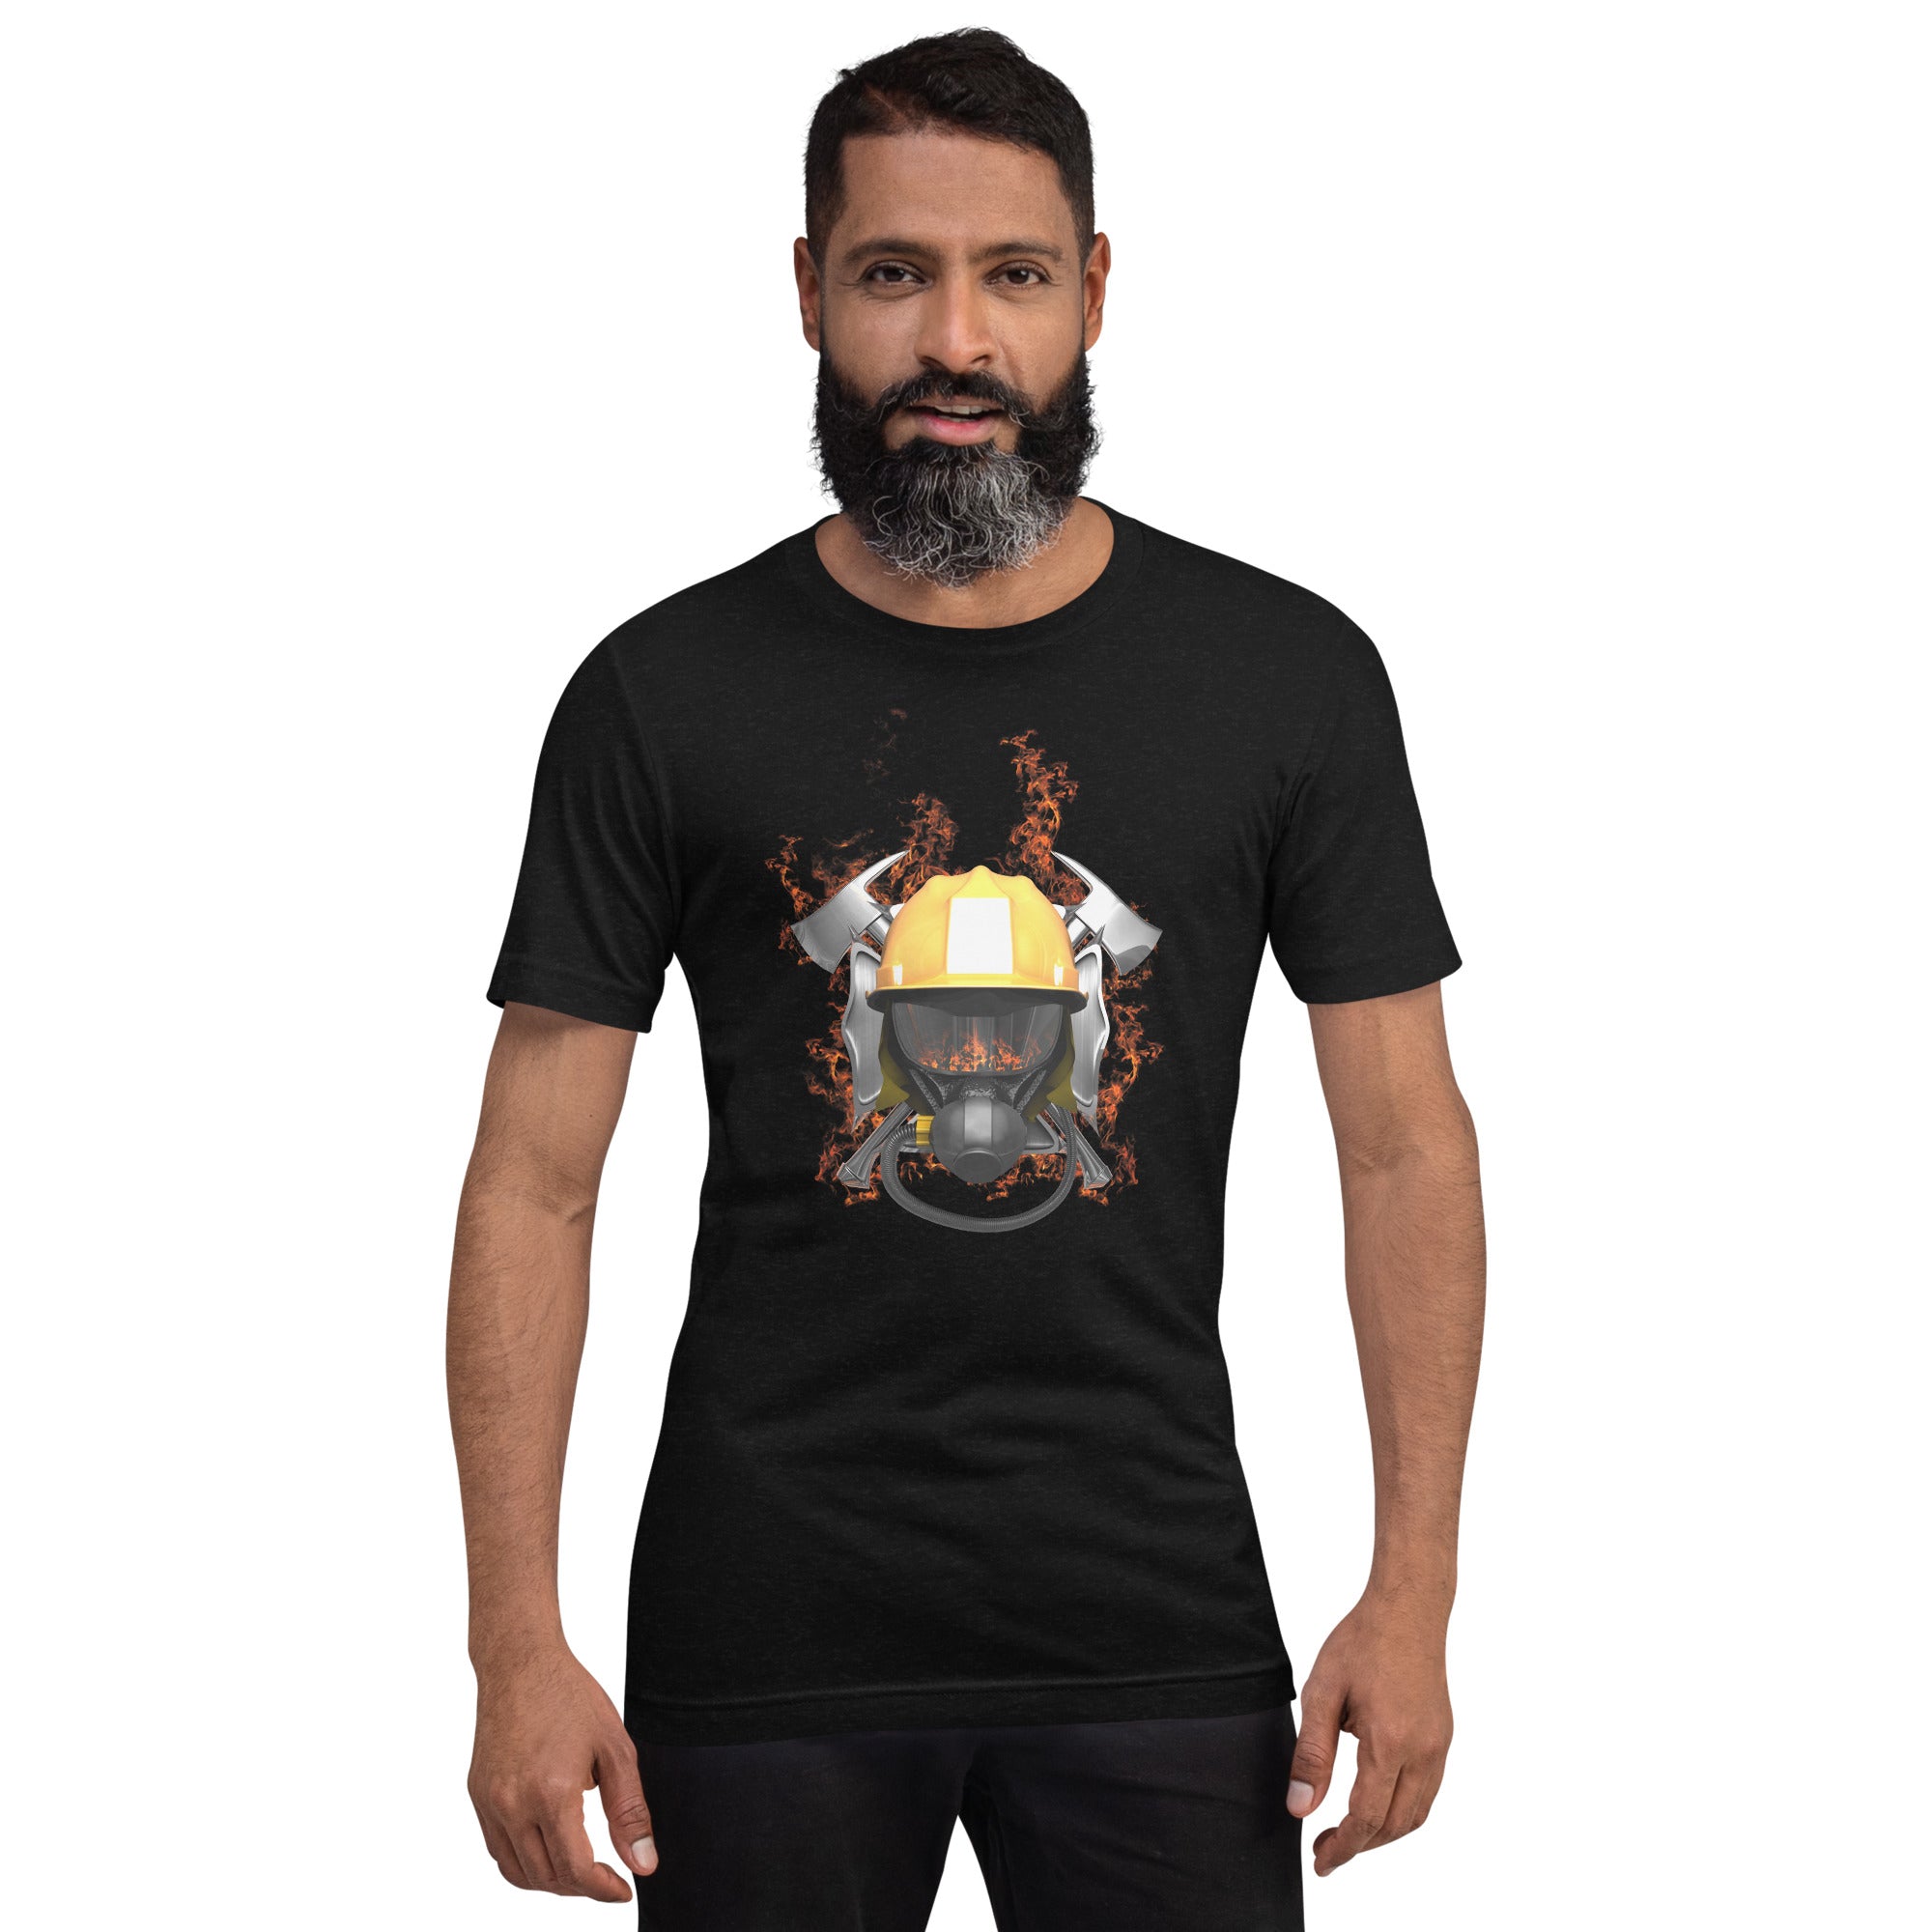 Wildfire-Feuerwehrmann Herren-T-Shirt